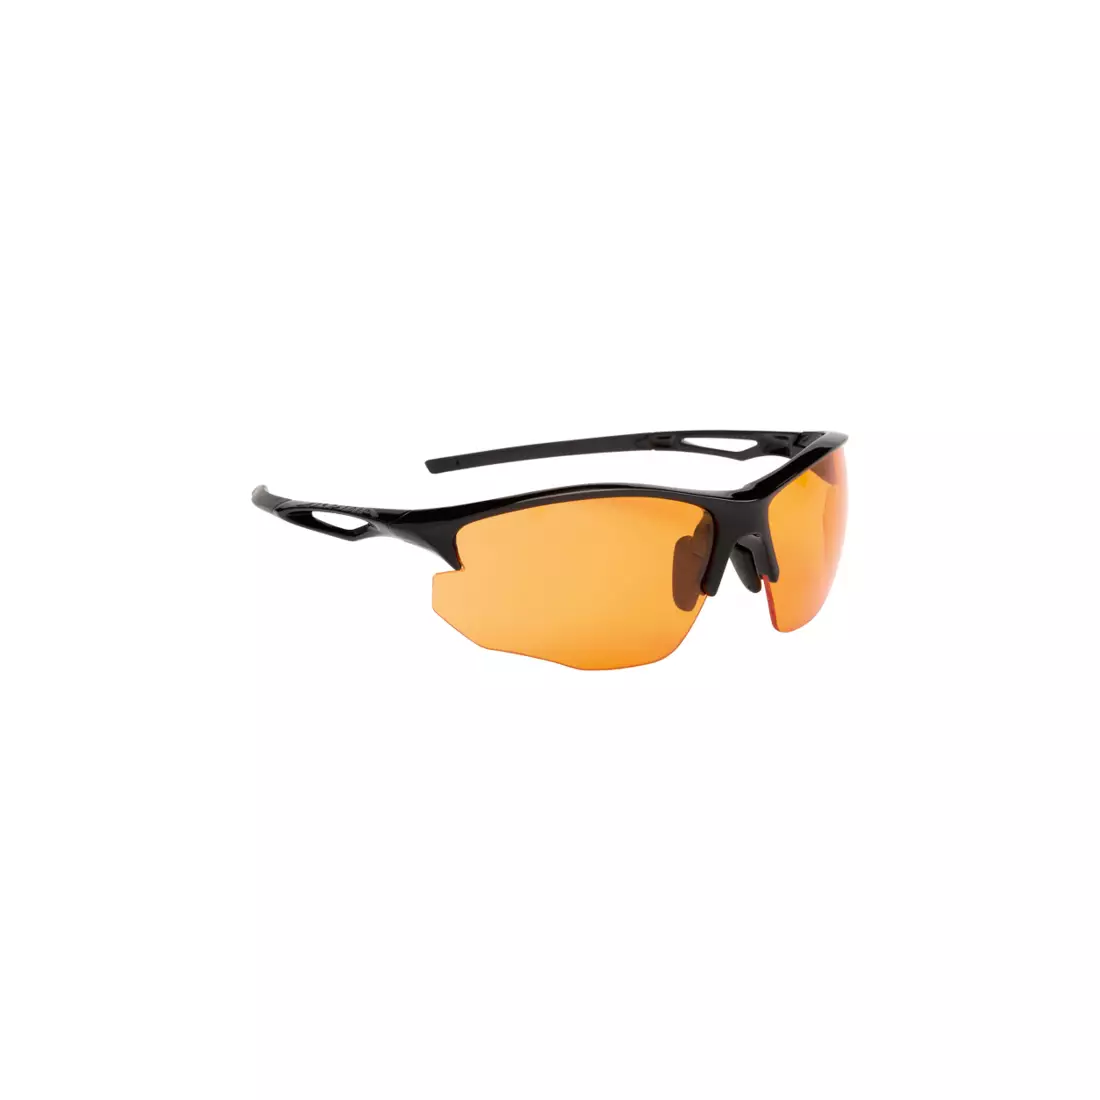 Ochelari sport ALPINA - SORCERY HR C+, sticlă antiaburire neagră mat / portocaliu.